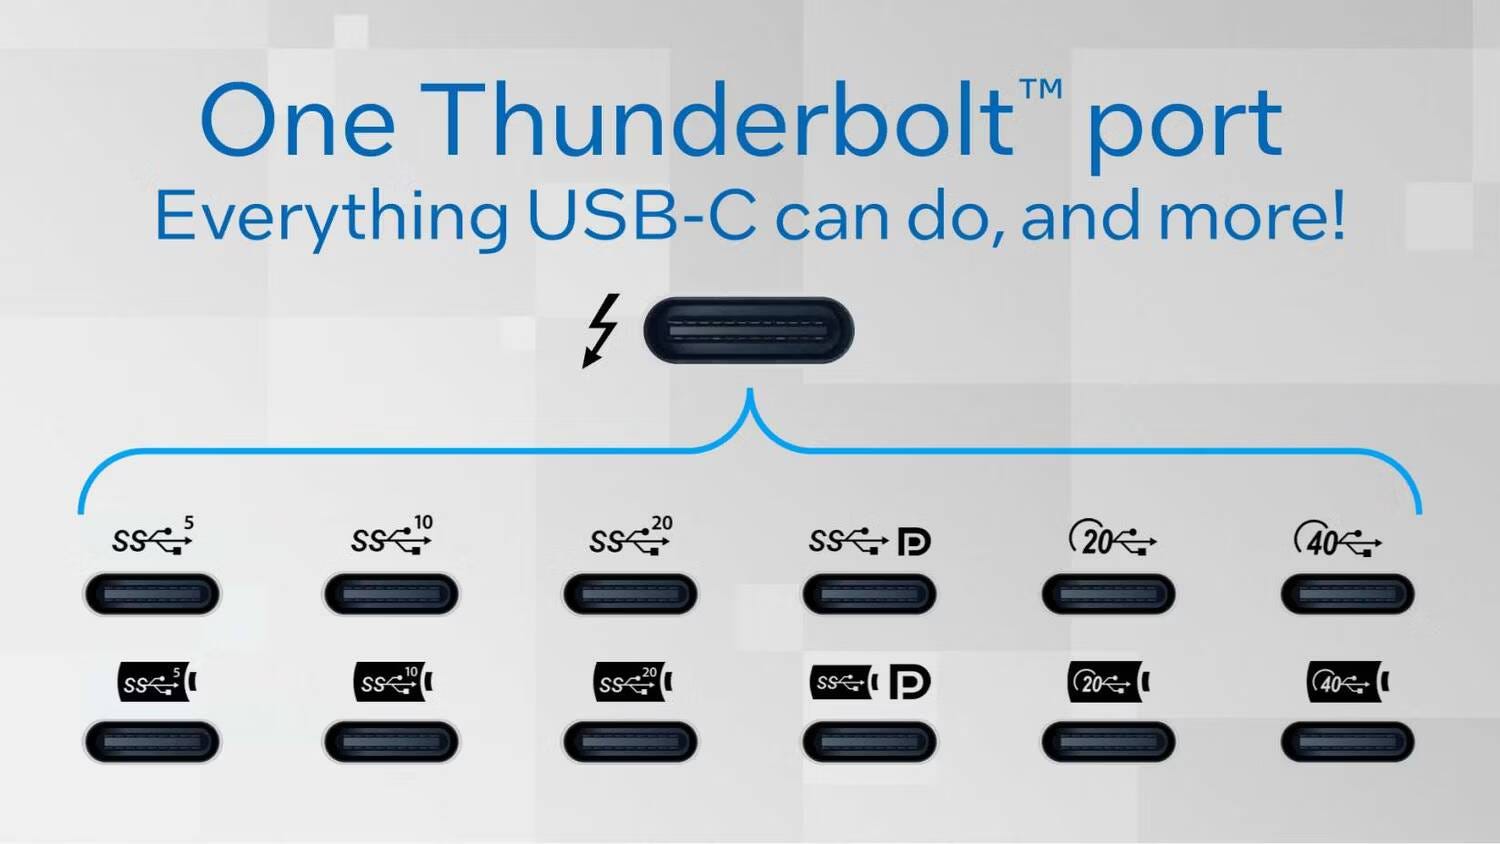 مُقارنة بين USB4 et Thunderbolt 4: توضيح أوجه التشابه والاختلاف - شروحات